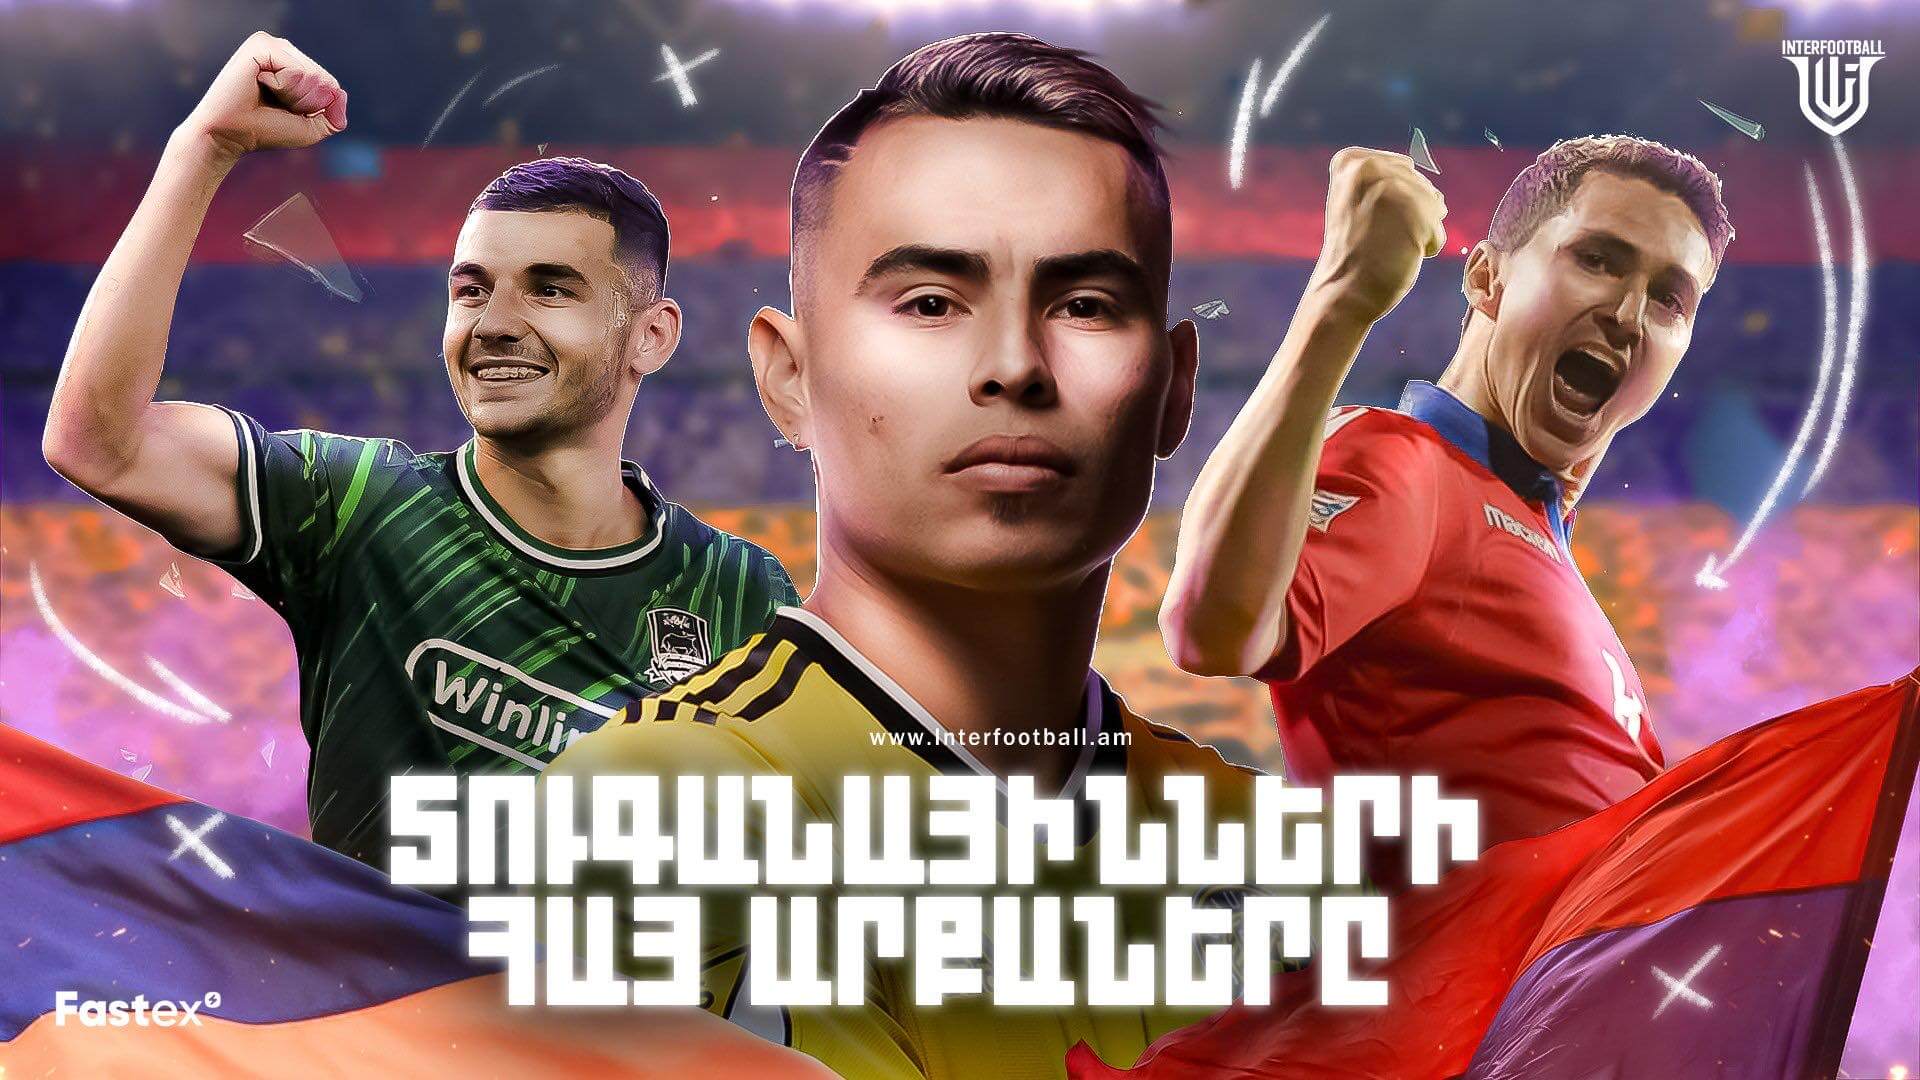 Արտասահմանյան ակումբներում հայ ֆուտբոլիստների` տուգանայինից խփած ամենաշքեղ գոլերը 🎥